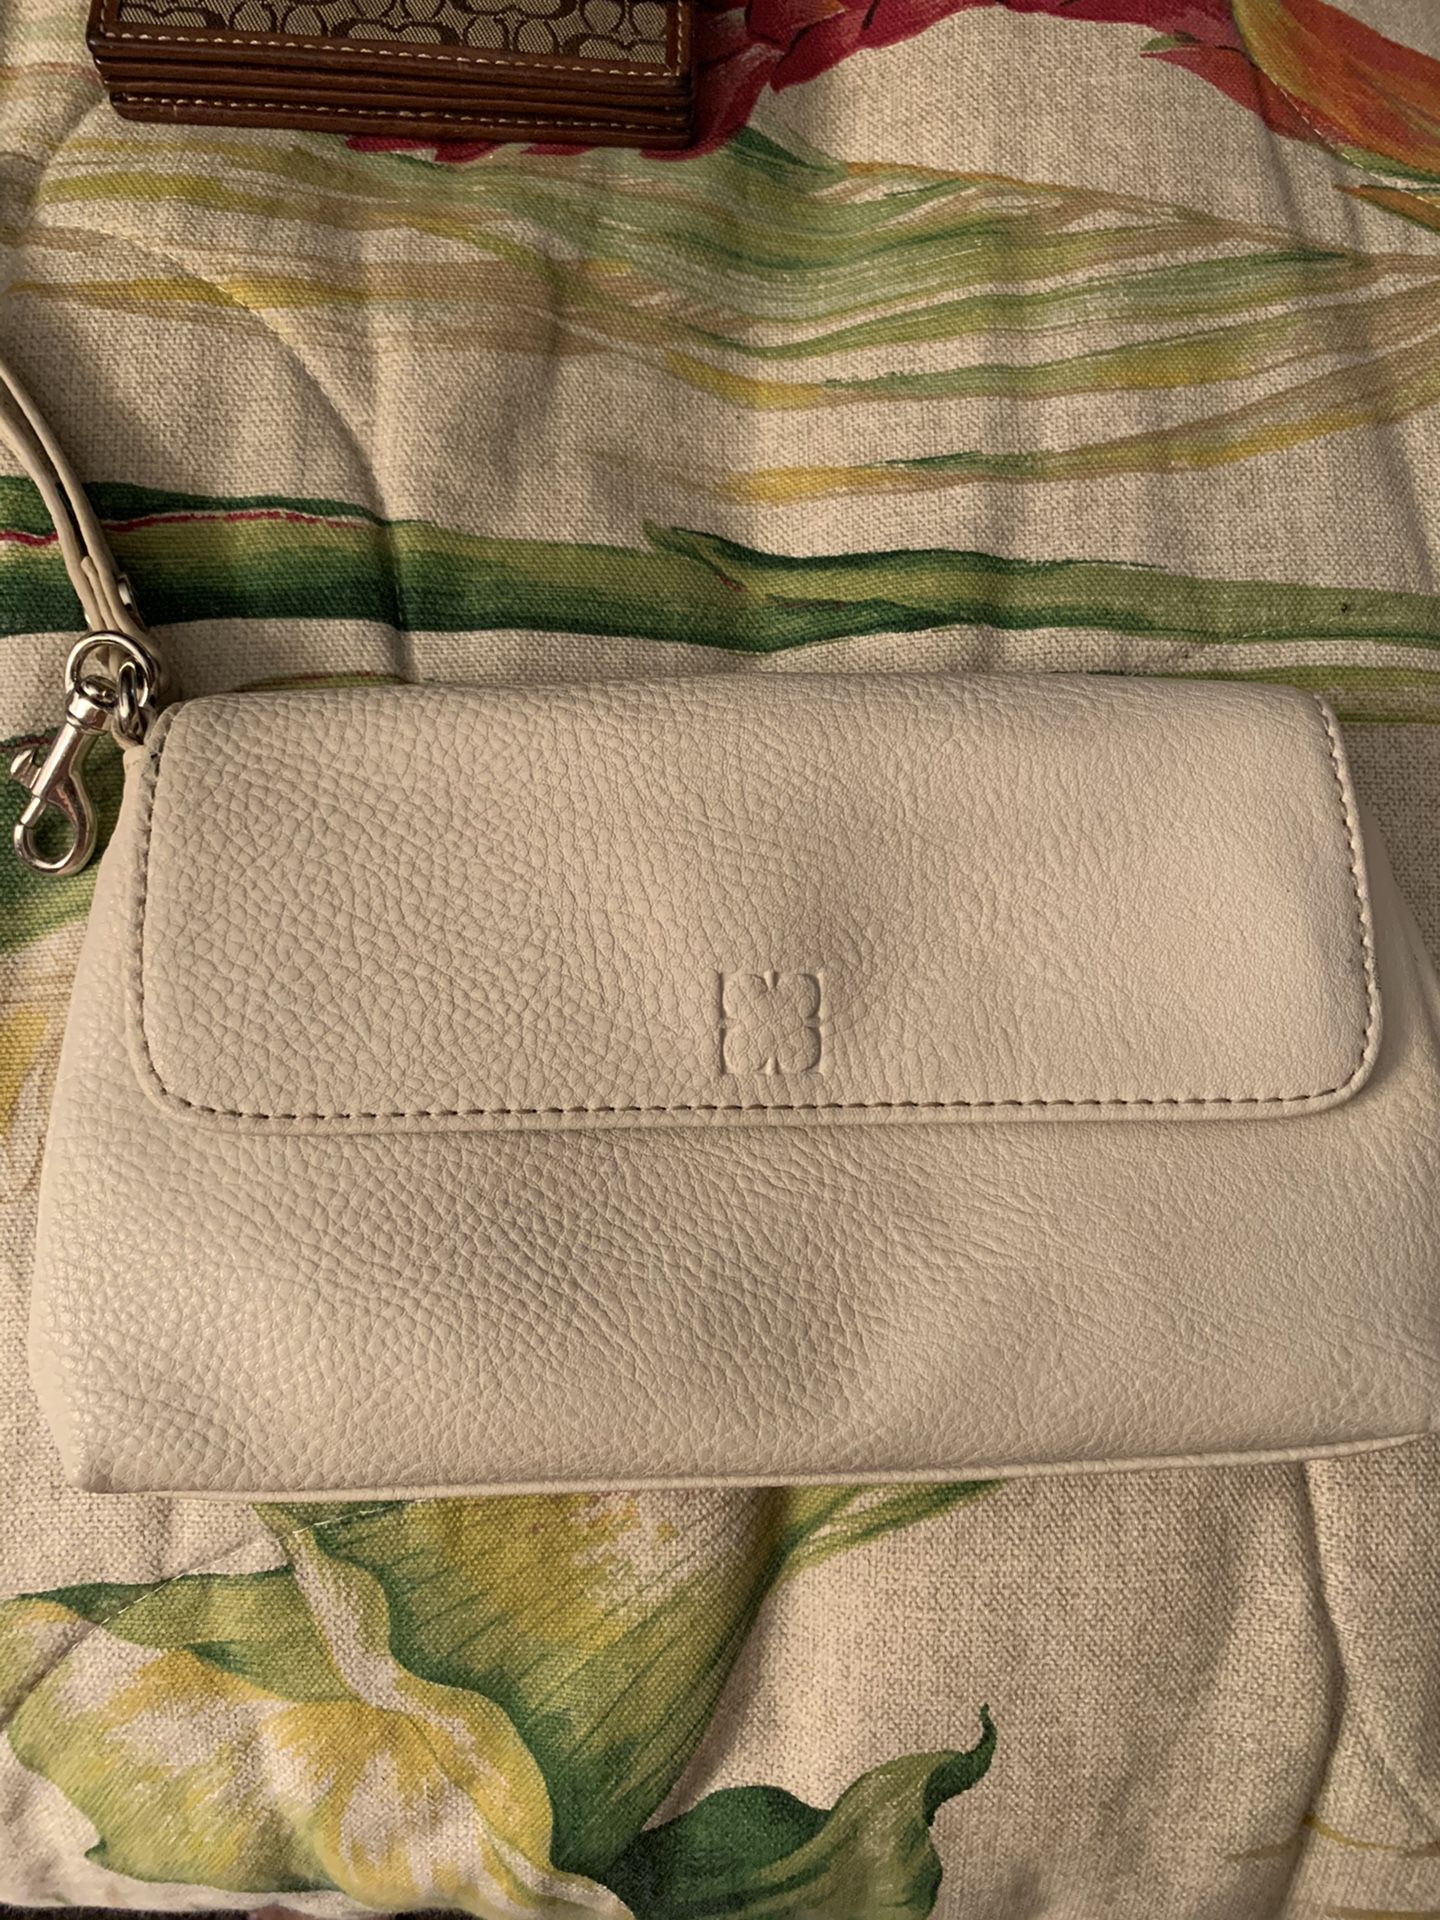 Small wallets and makeup bag